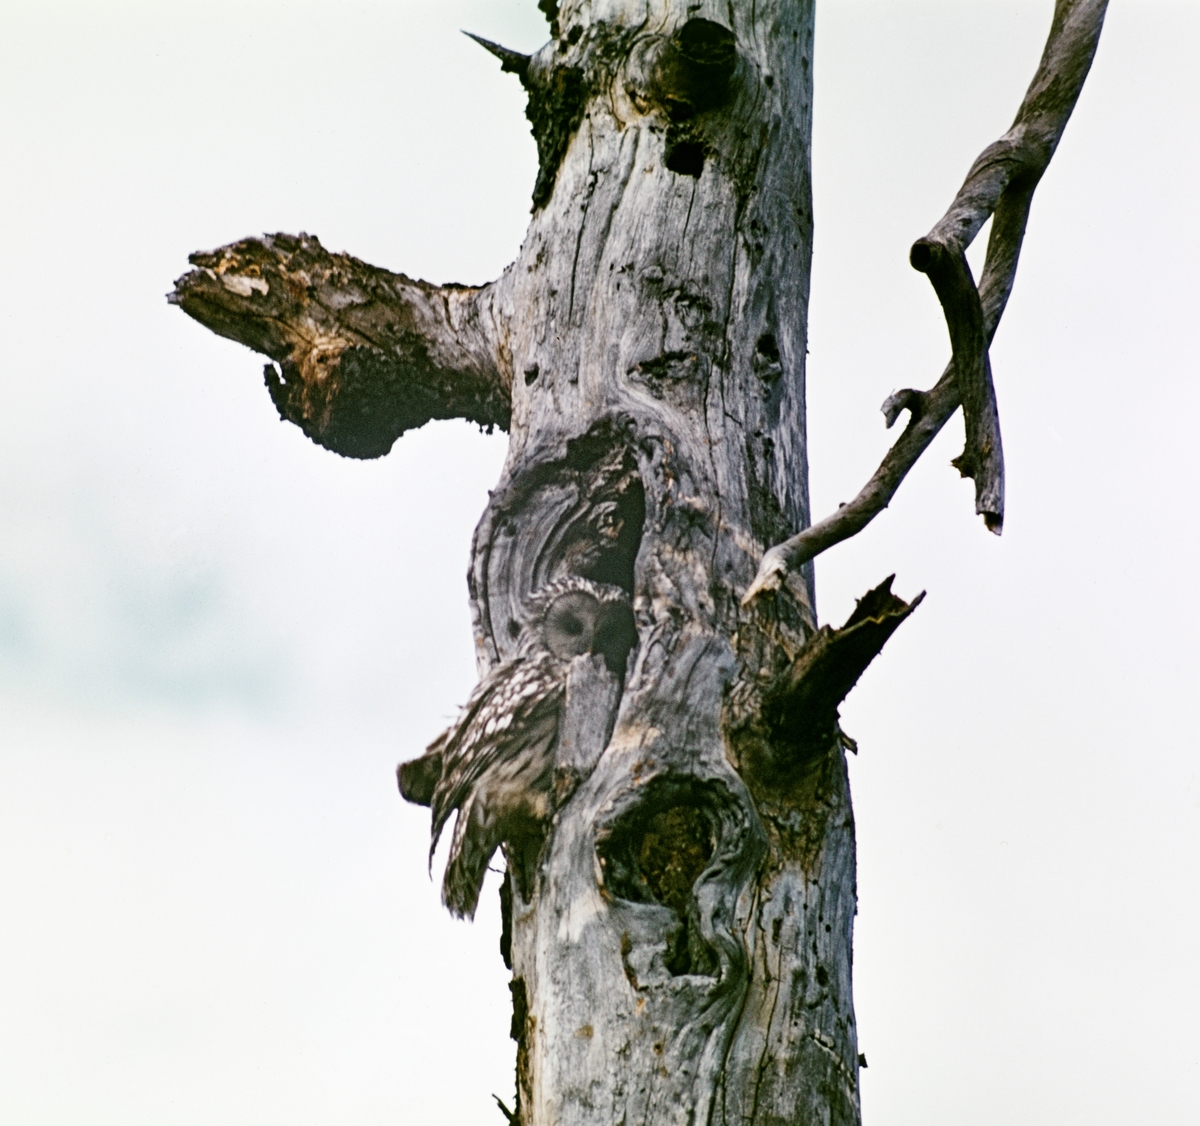 Slagugle (Strix uralensis), fotografert i noe som antakelig må ha vært et reirhull i en tørr trestamme.  Slagugla har gulbrun fjærdrakt med mørkebrune langstrakte flekker eller spetter.  Denne arten hekker i Nord- og Øst-Europa, samt i store deler av Asia.  Den finnes i Finland og Nord-Sverige, men er forholdsvis sjelden i Norge.  Da dette fotografiet ble tatt i Stavåsen i Elverum (Hedmark) i 1967 må det ha vært en sjelden observasjon.  Slagugler kan bli om lag 60 centimeter lange og få et vingespenn på om lag 130 centimeter.